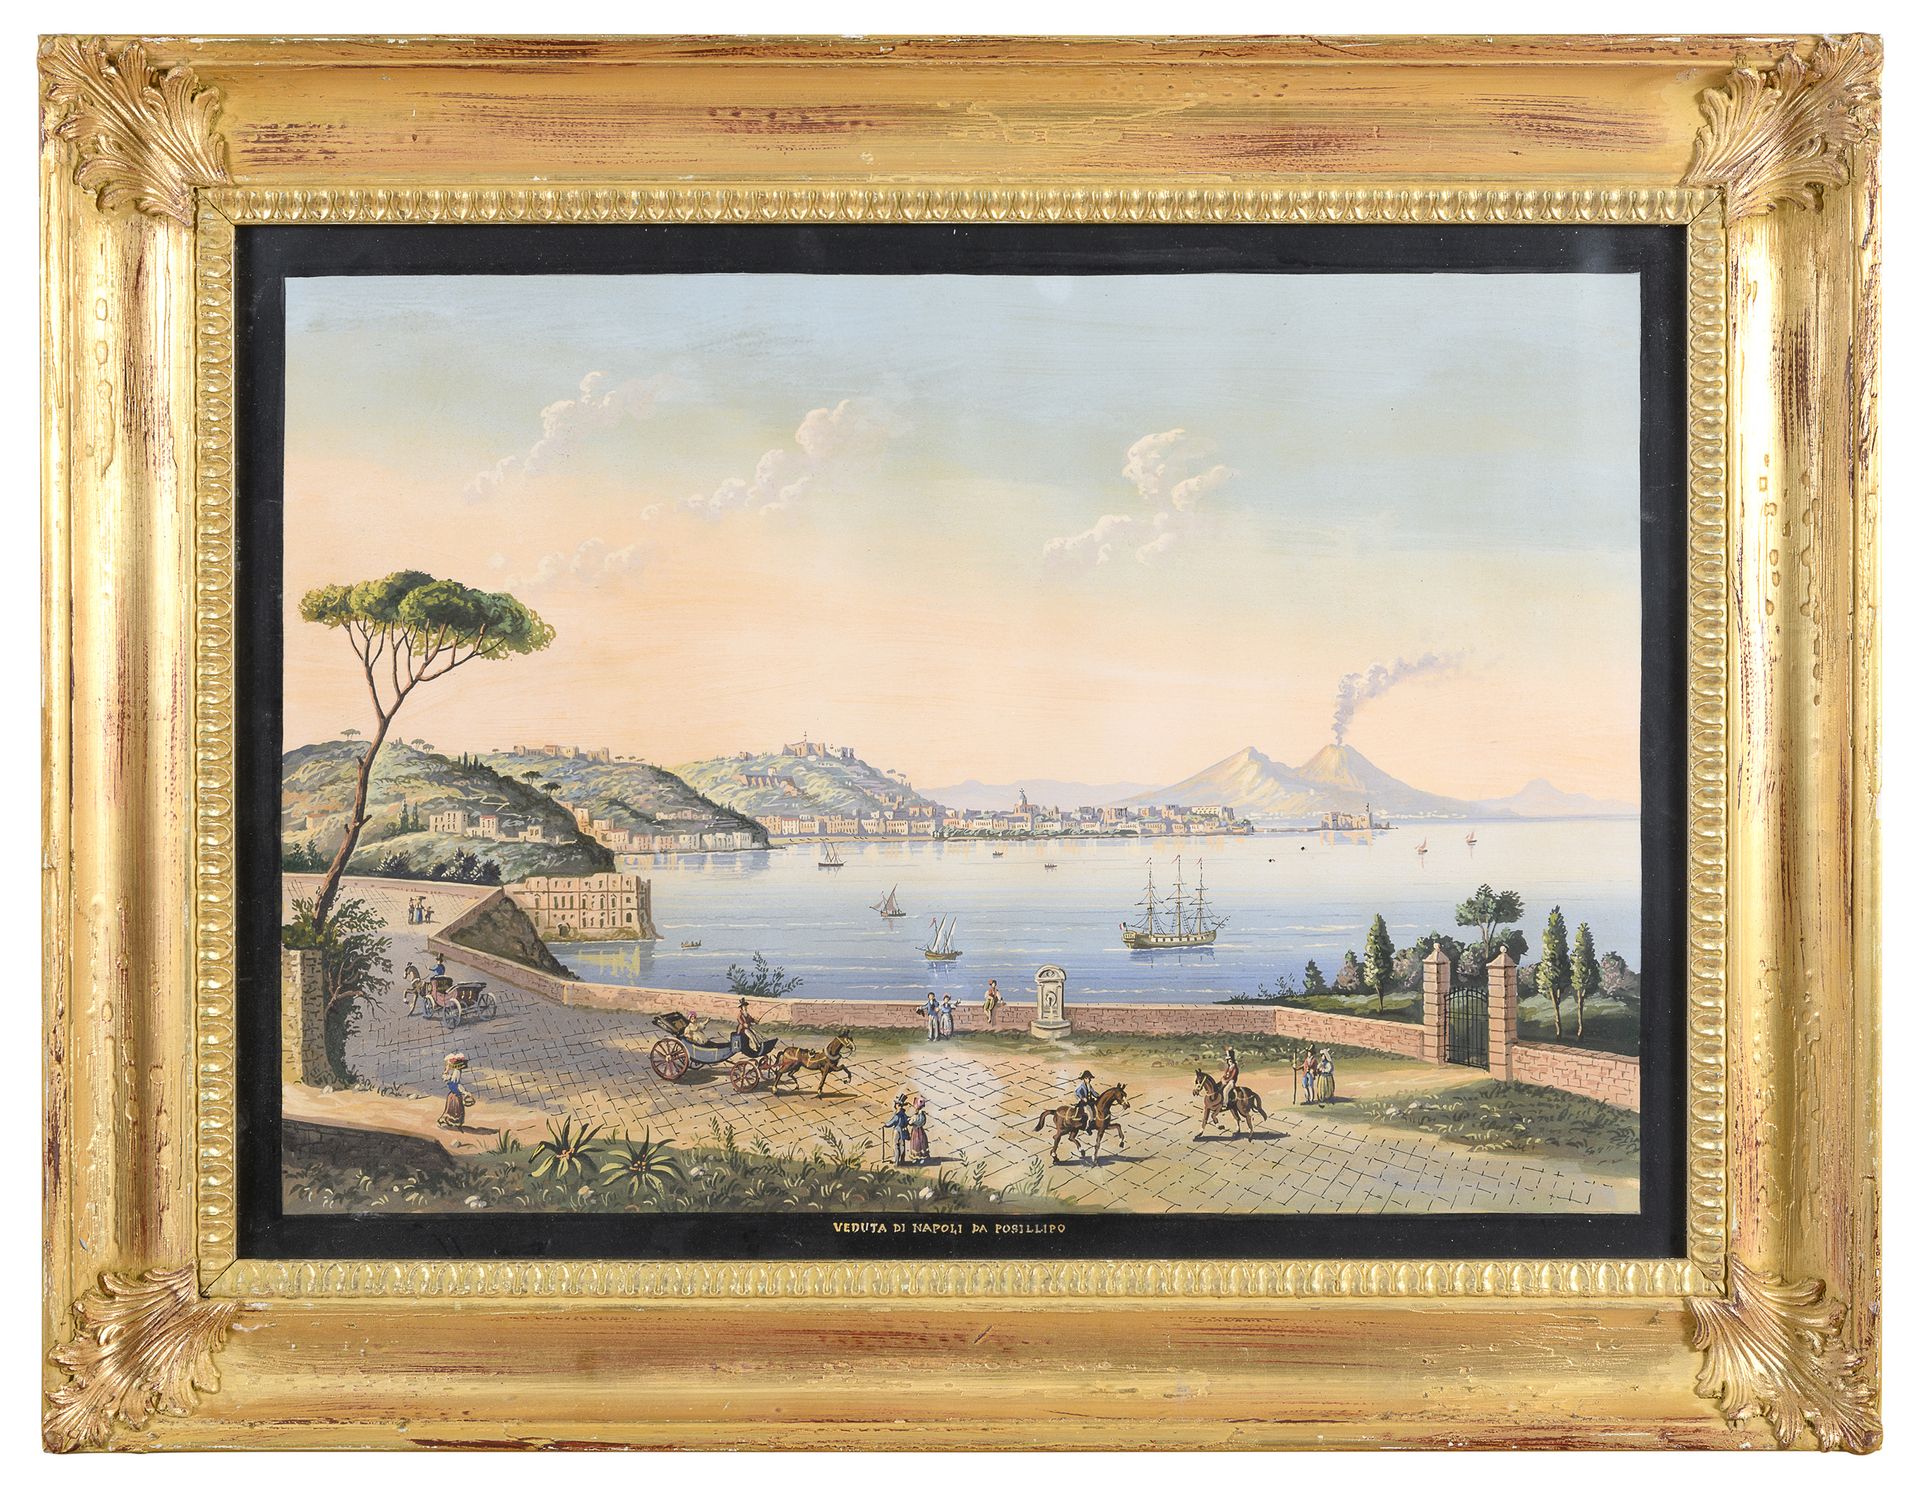 Null 那不勒斯画家，20世纪初



从POSILLIPO看那不勒斯

水粉画，50 x 70厘米

字幕

水粉画框架